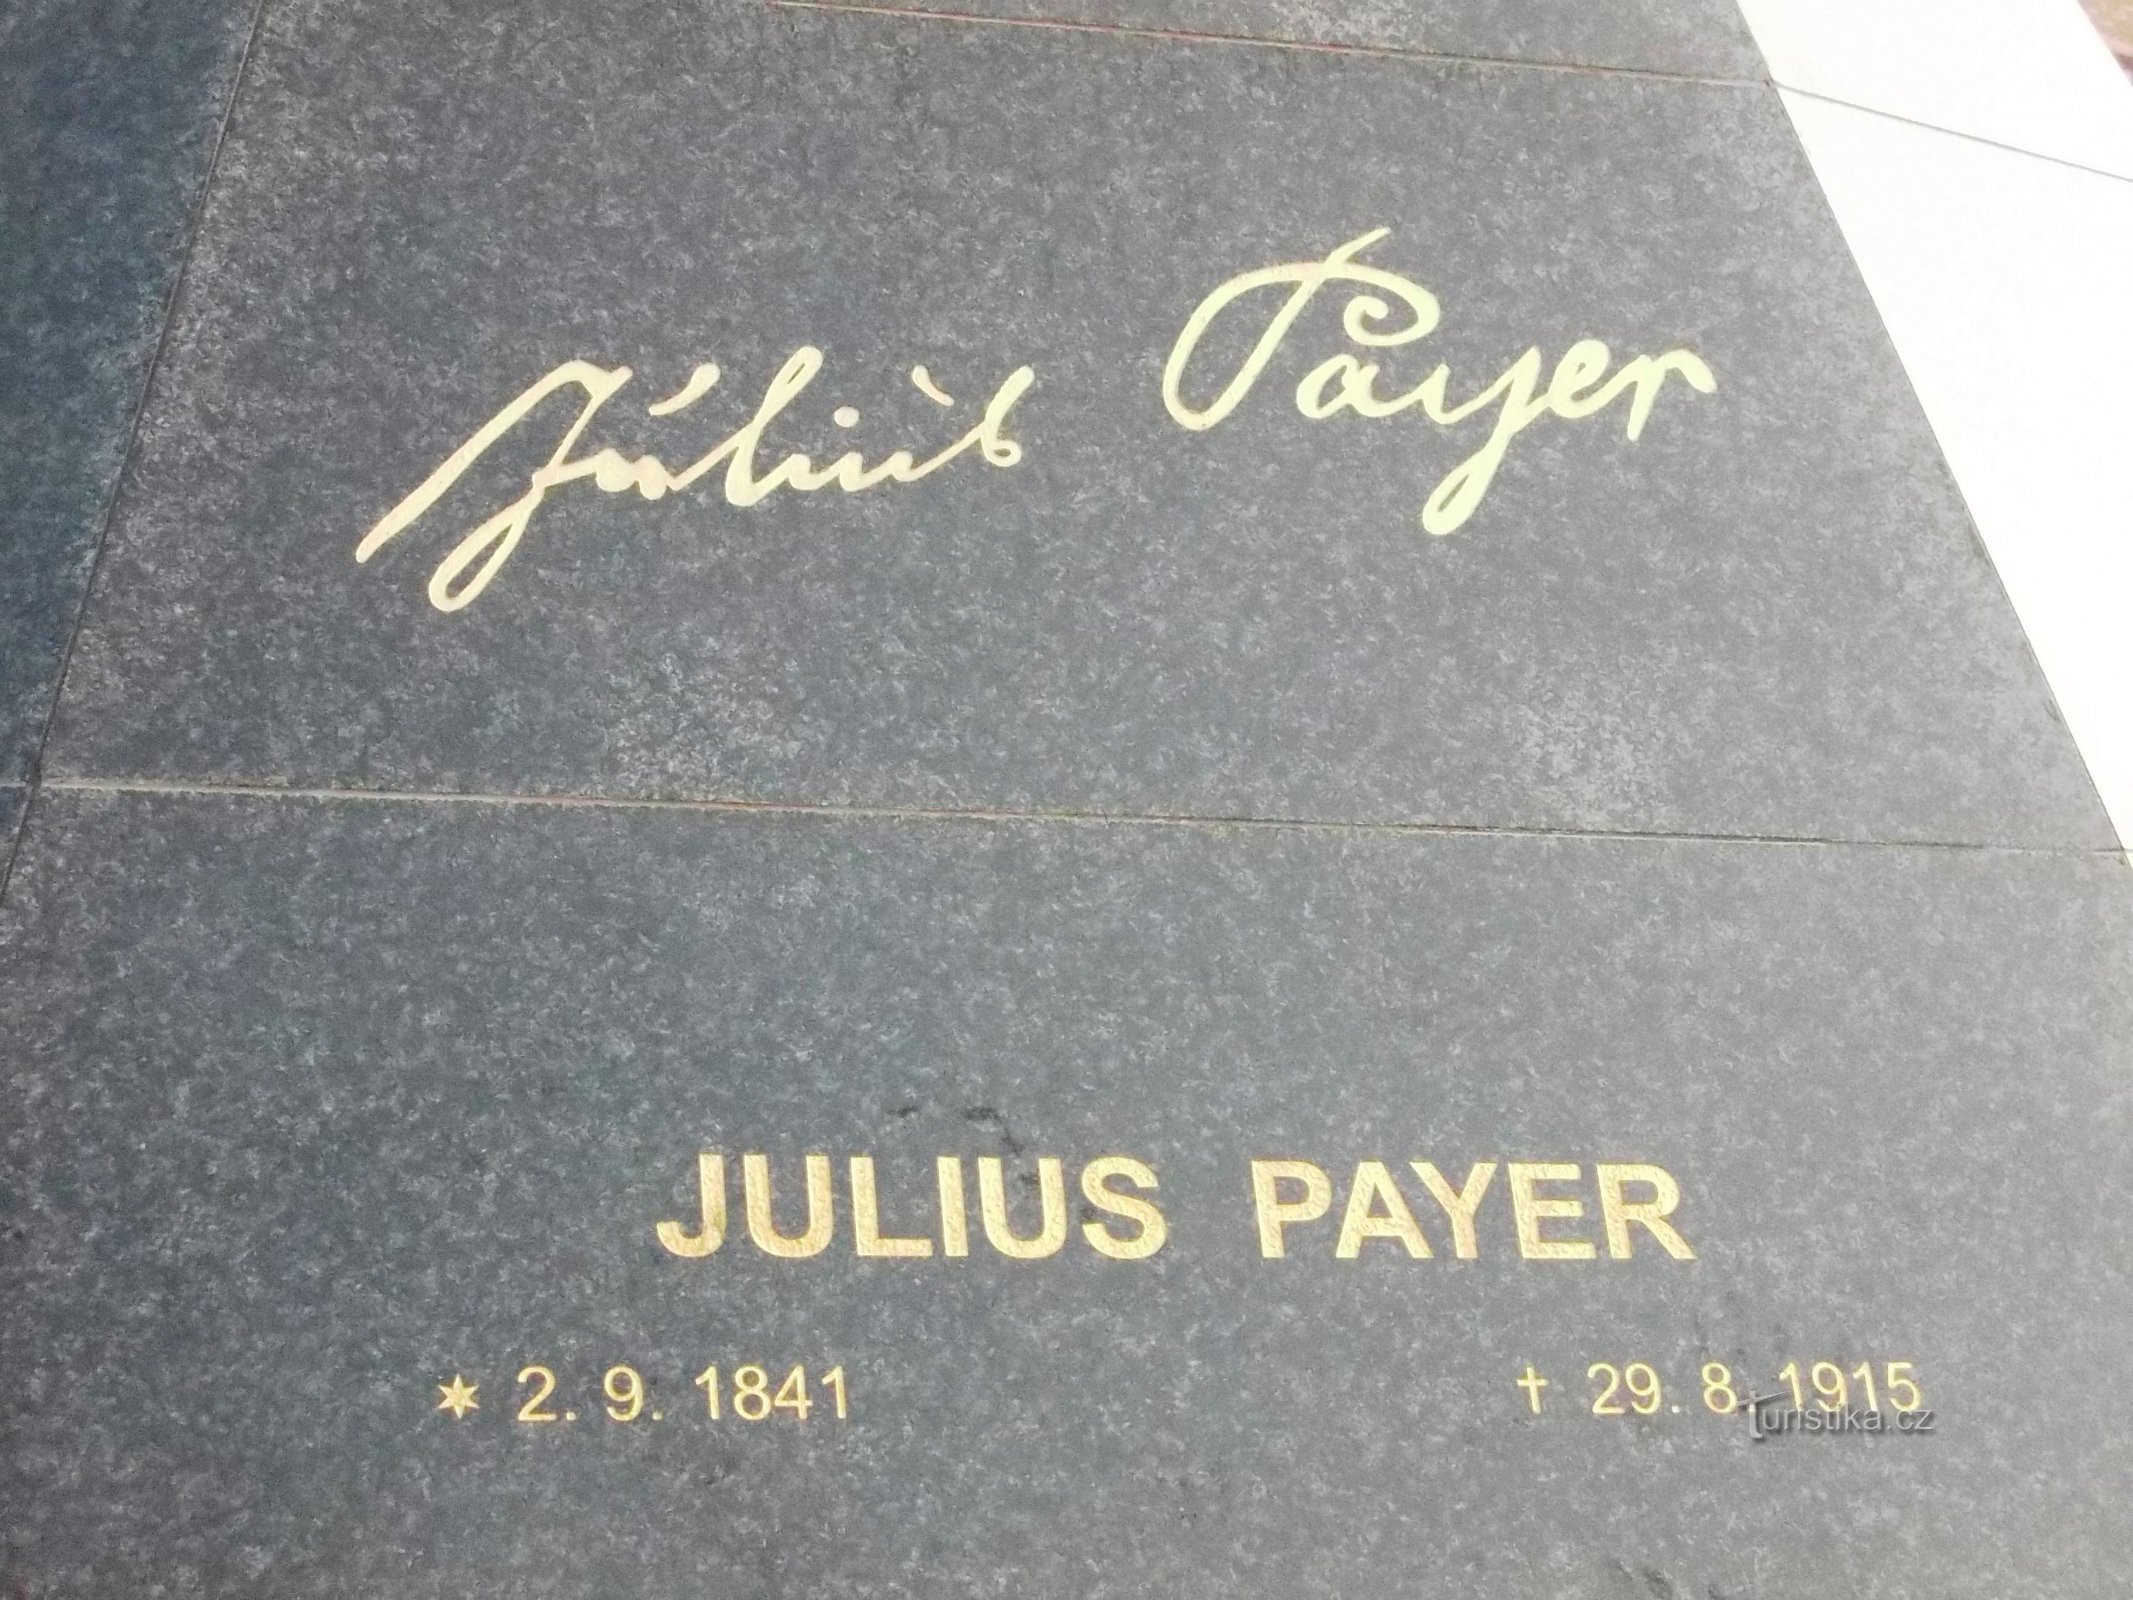 Ο Julius Payer έζησε τα έτη 1841 - 1915